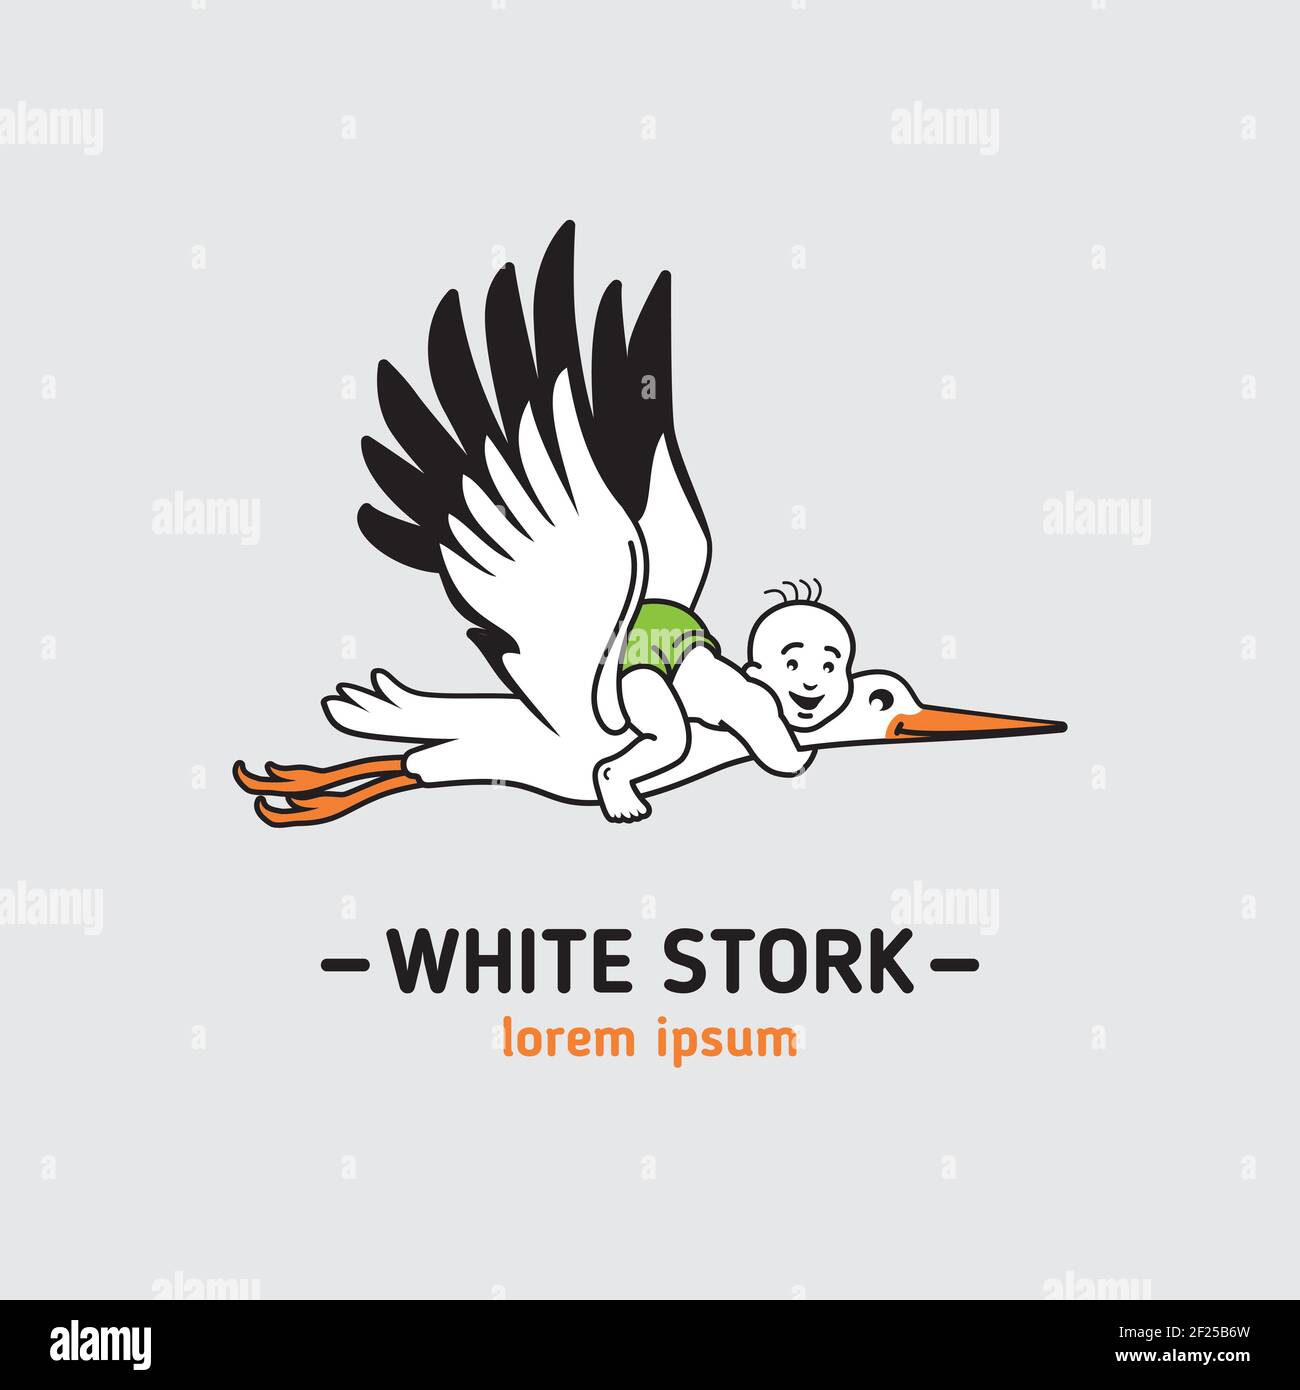 Weißstorch mit einem kleinen Jungen fliegen in den Himmel, heller Hintergrund Stock Vektor